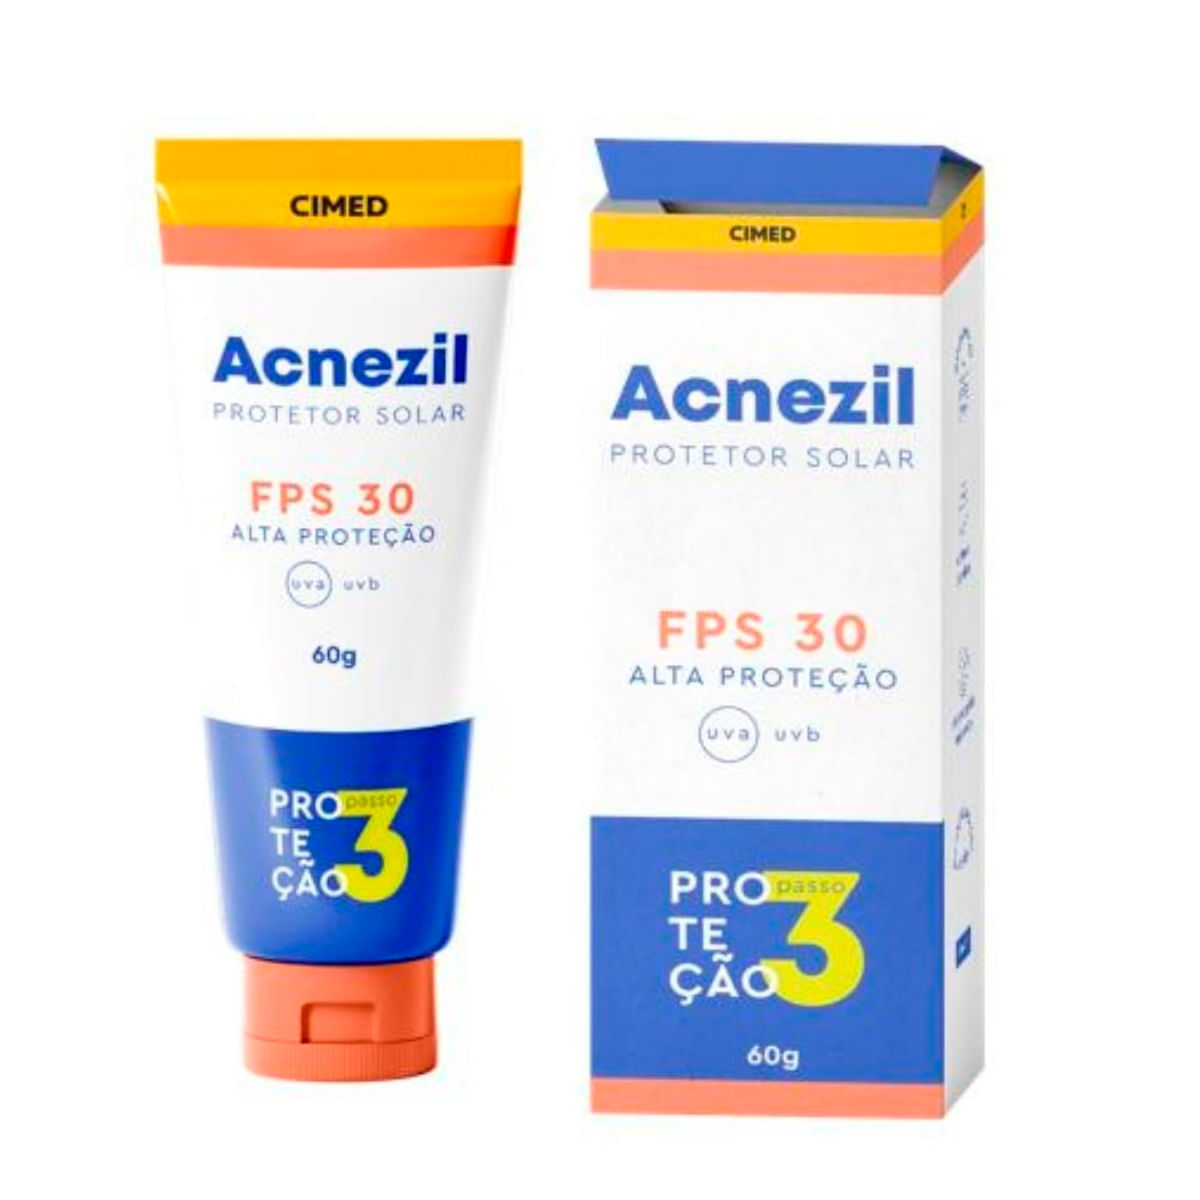 Acnezil Protetor Solar FPS30 Oil Control BG 60g Cimed